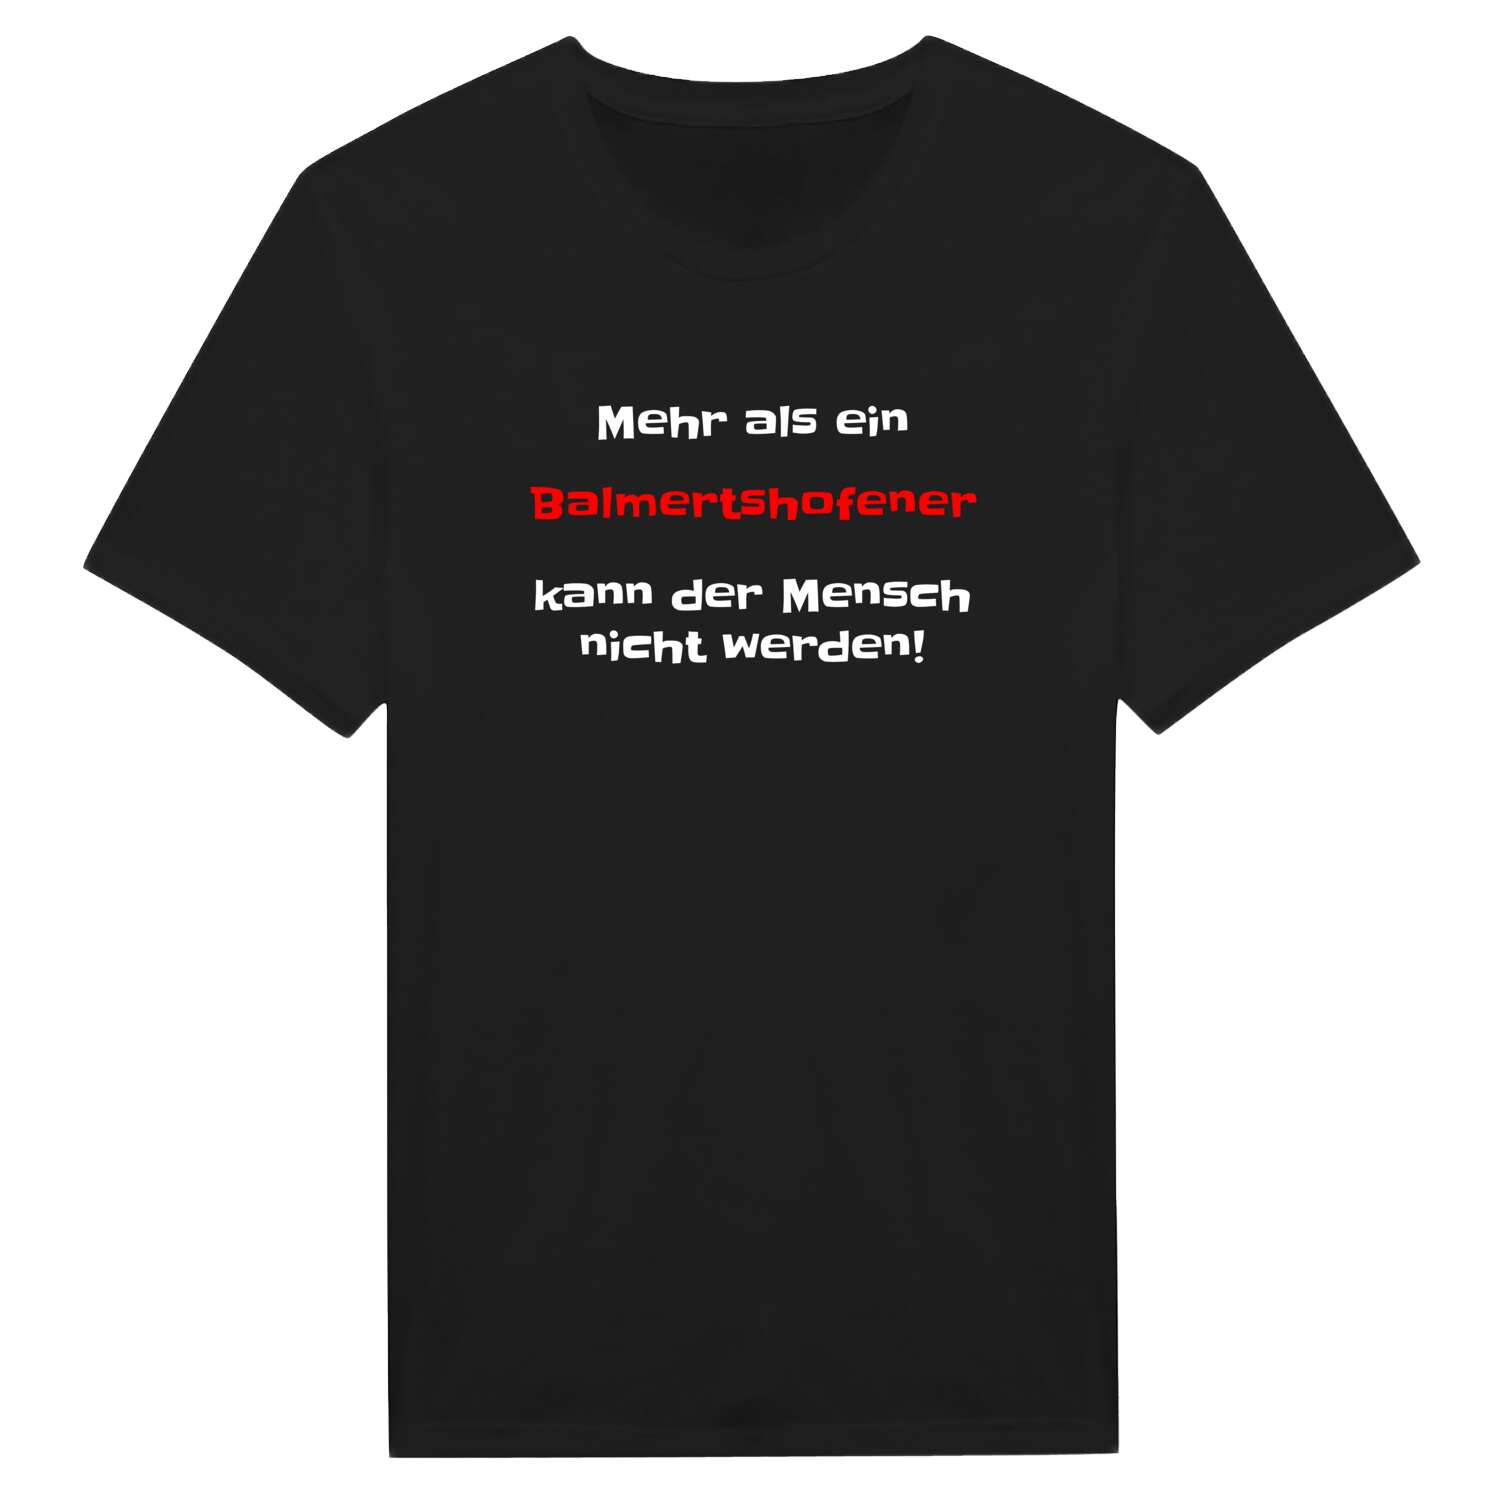 Balmertshofen T-Shirt »Mehr als ein«